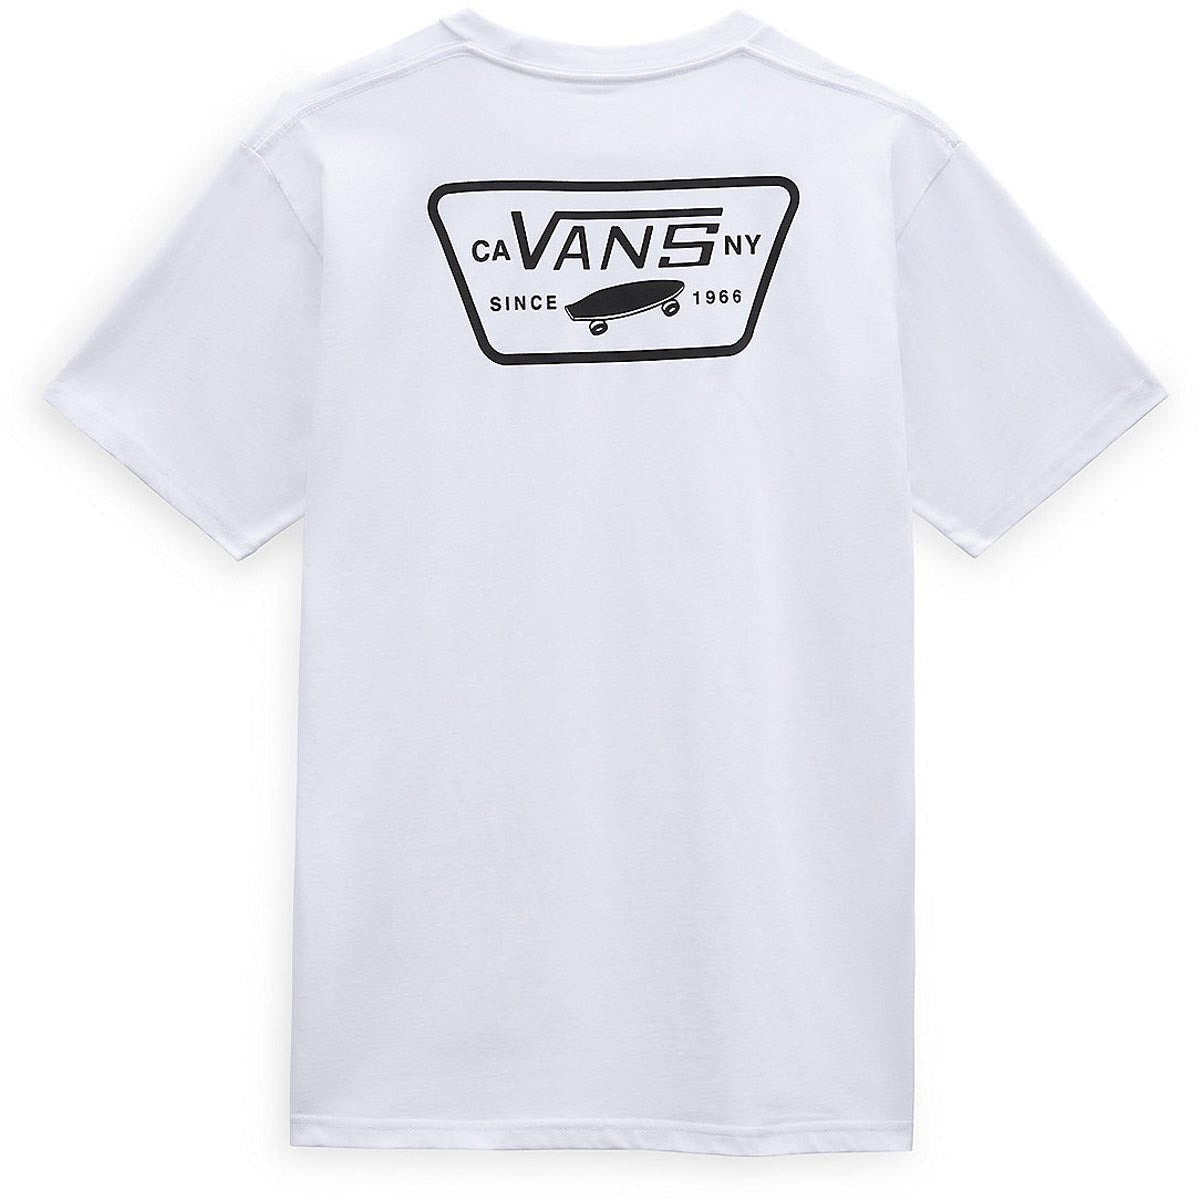 Vans Full Back Patch T-Shirt - White/Black image 2